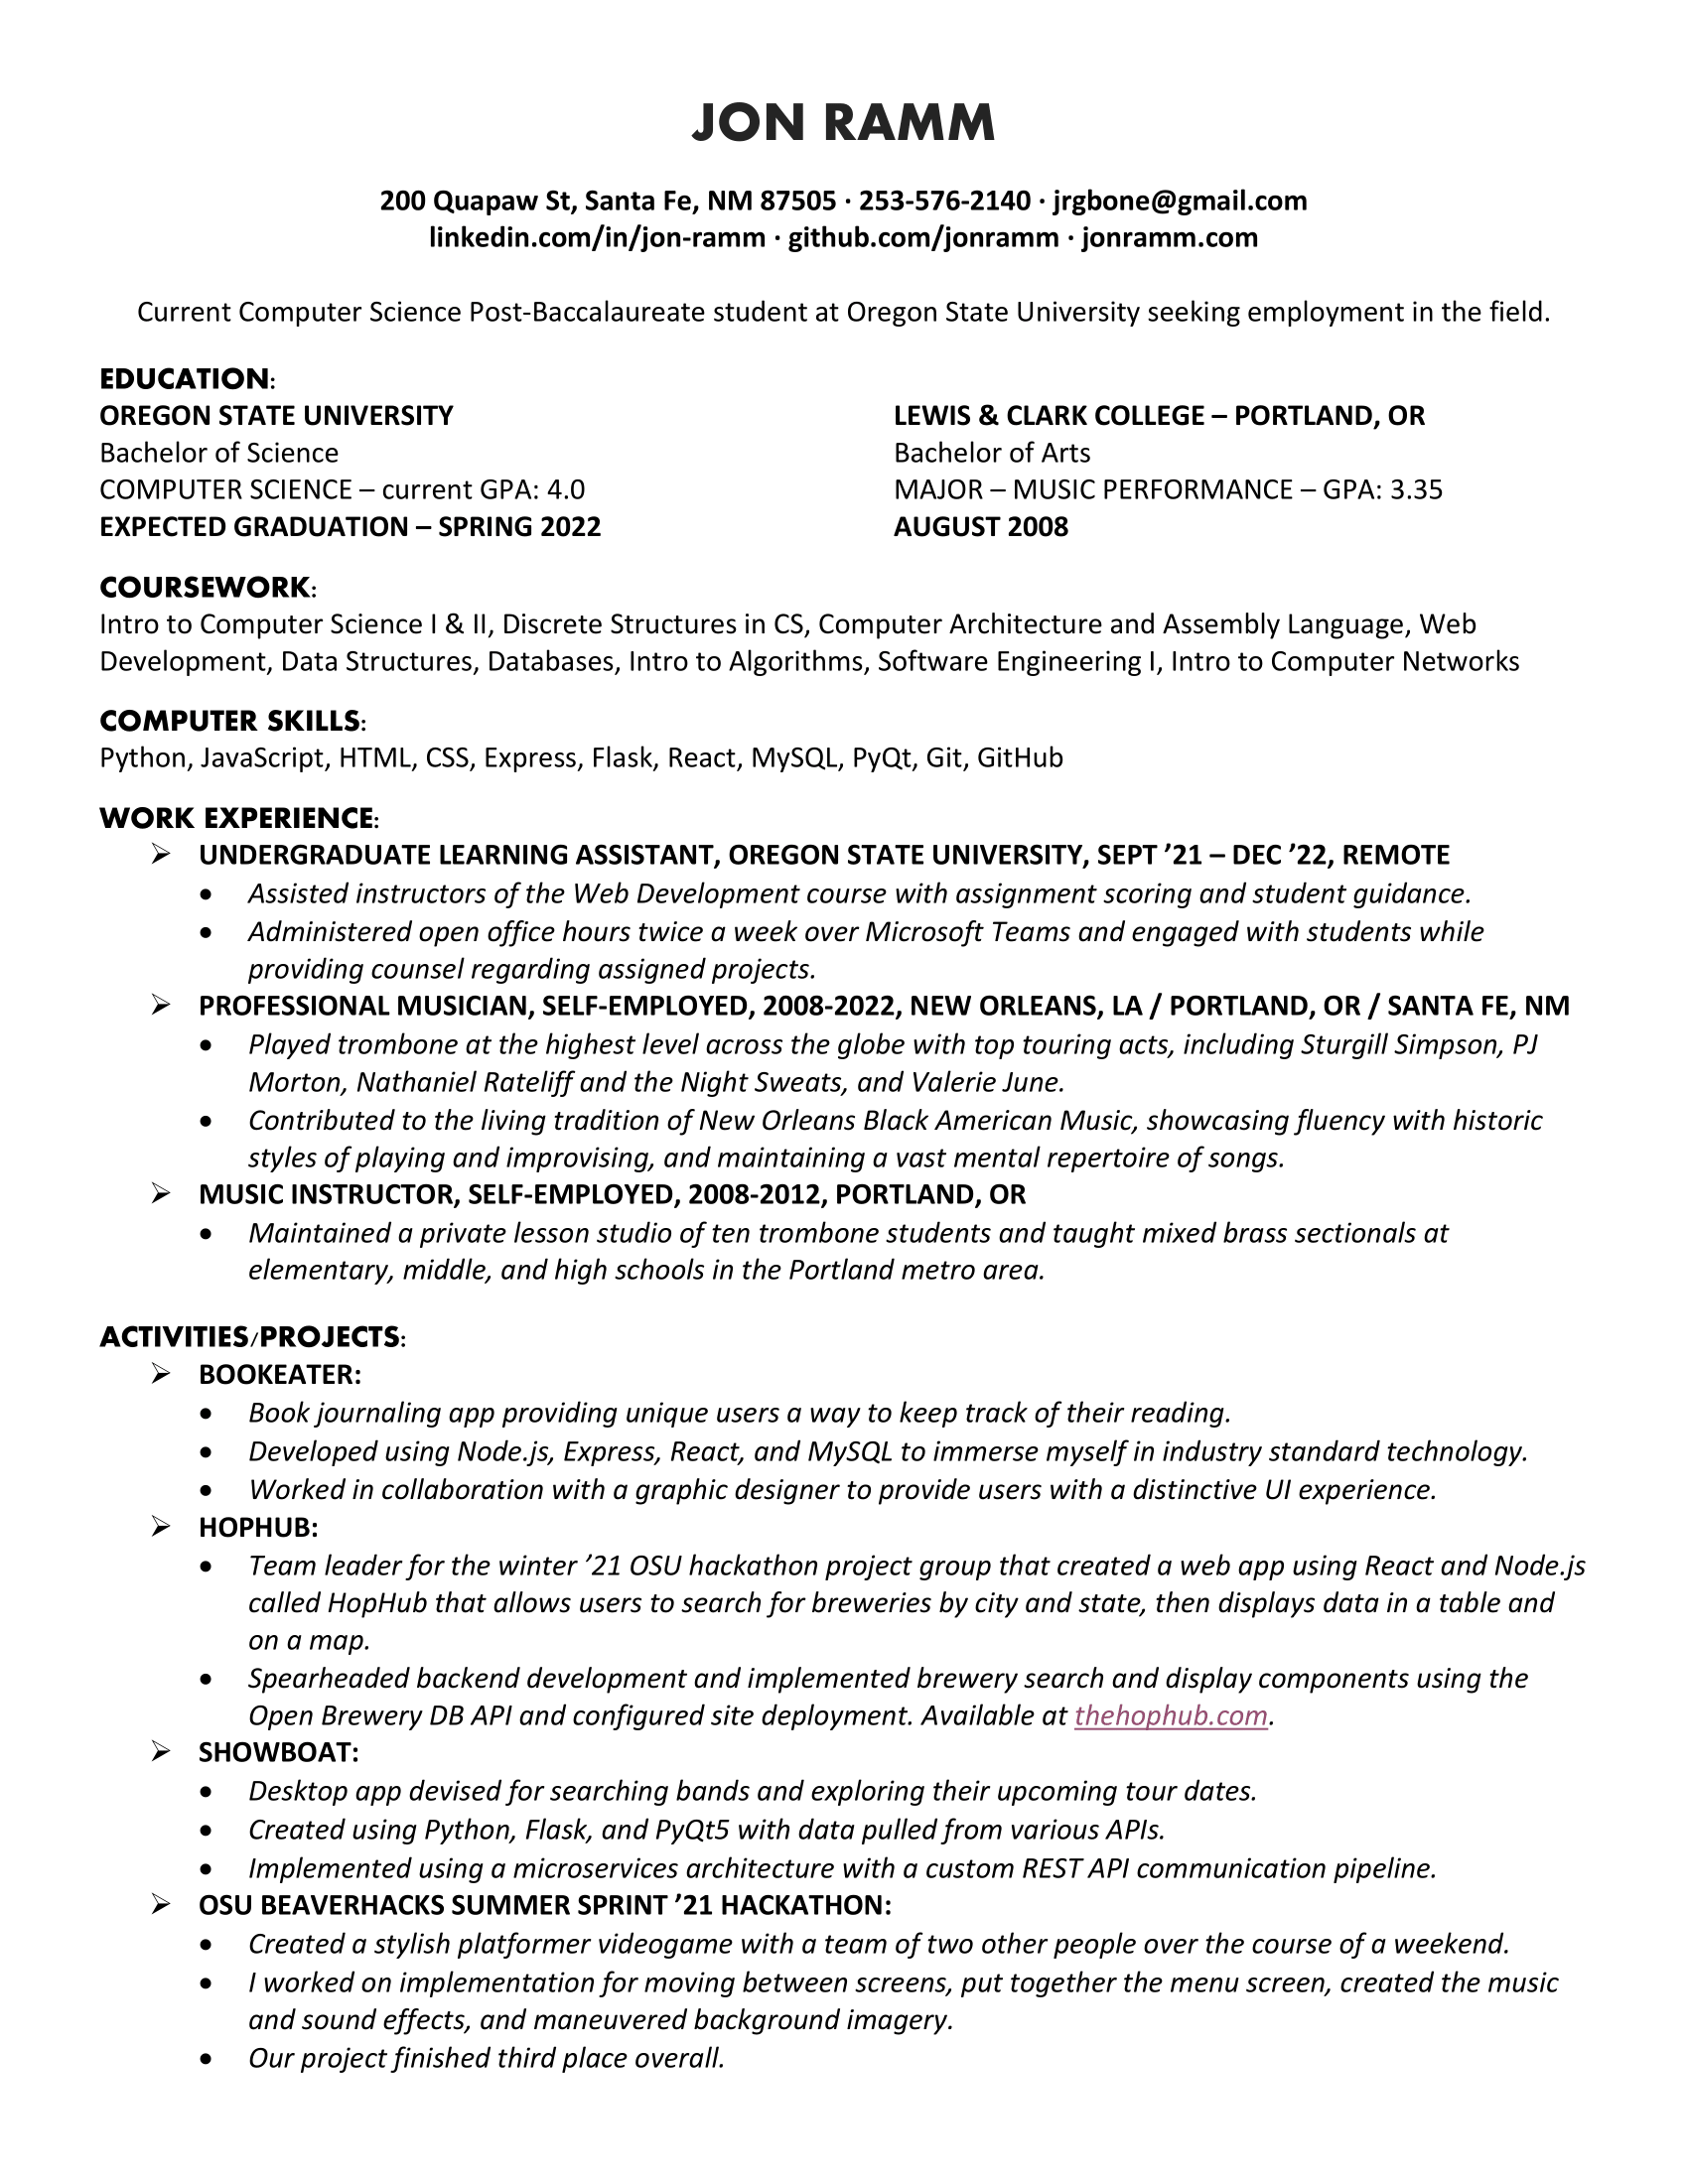 Jon's resume